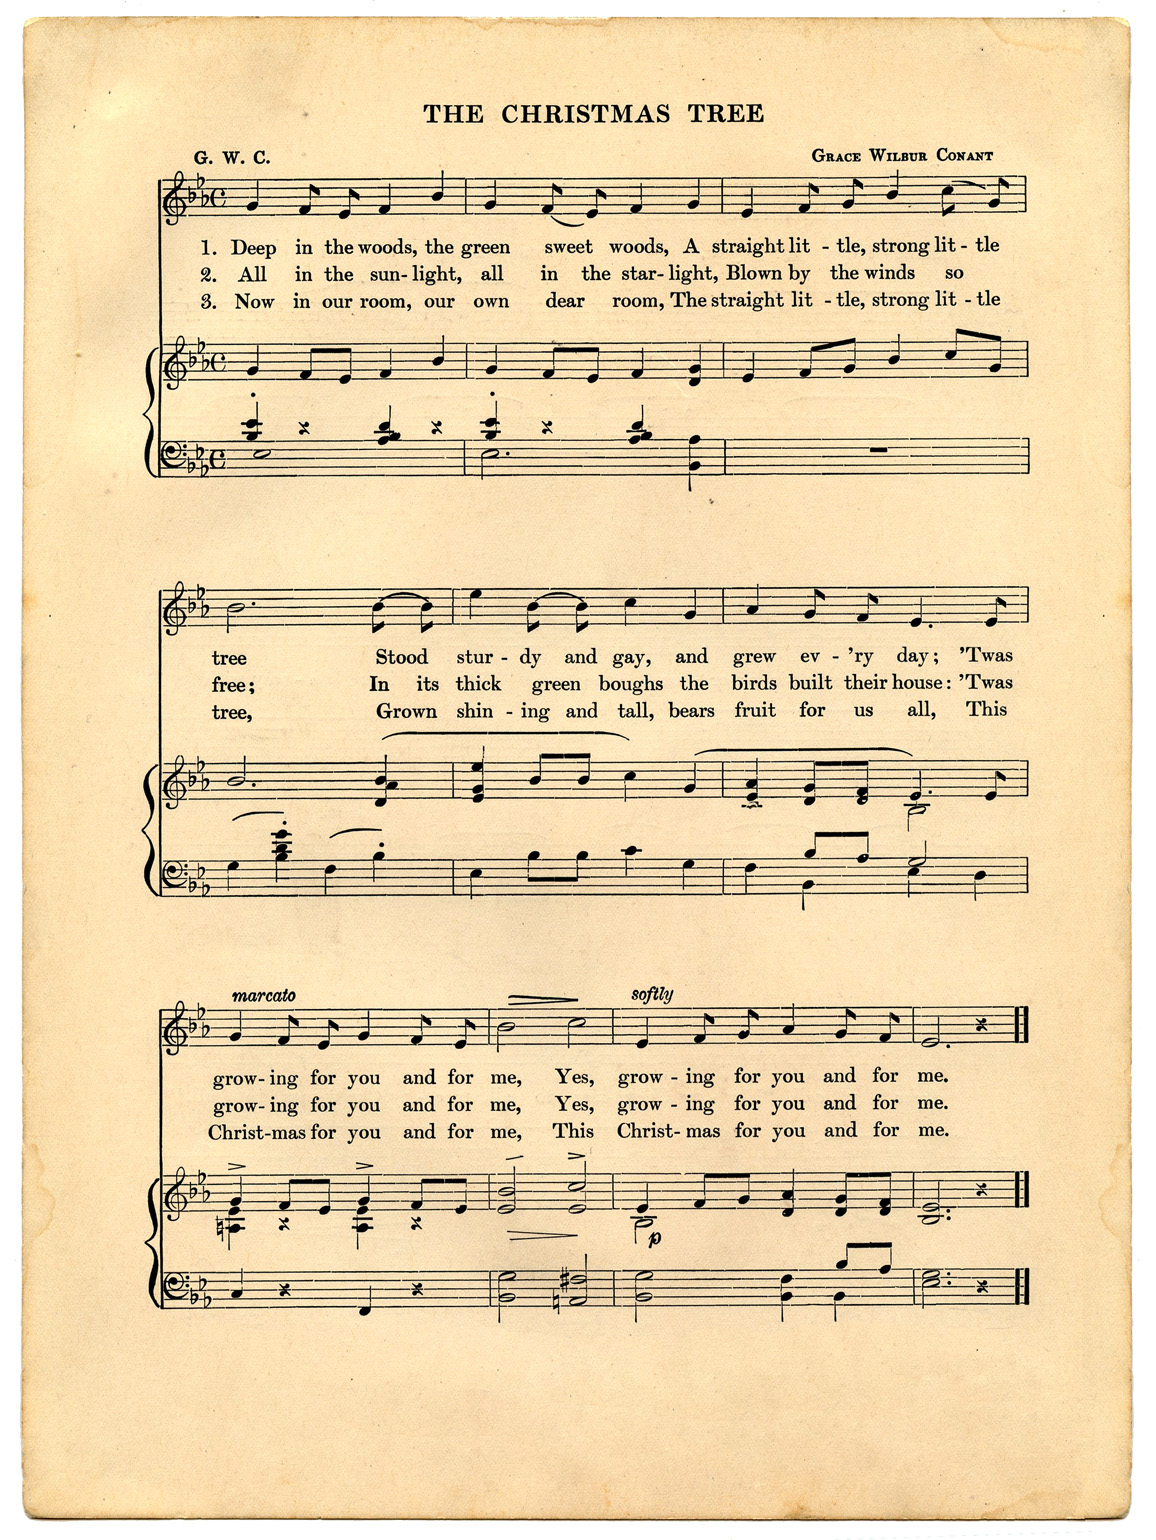 Vintage Christmas Sheet Music Printable - The Graphics Fairy